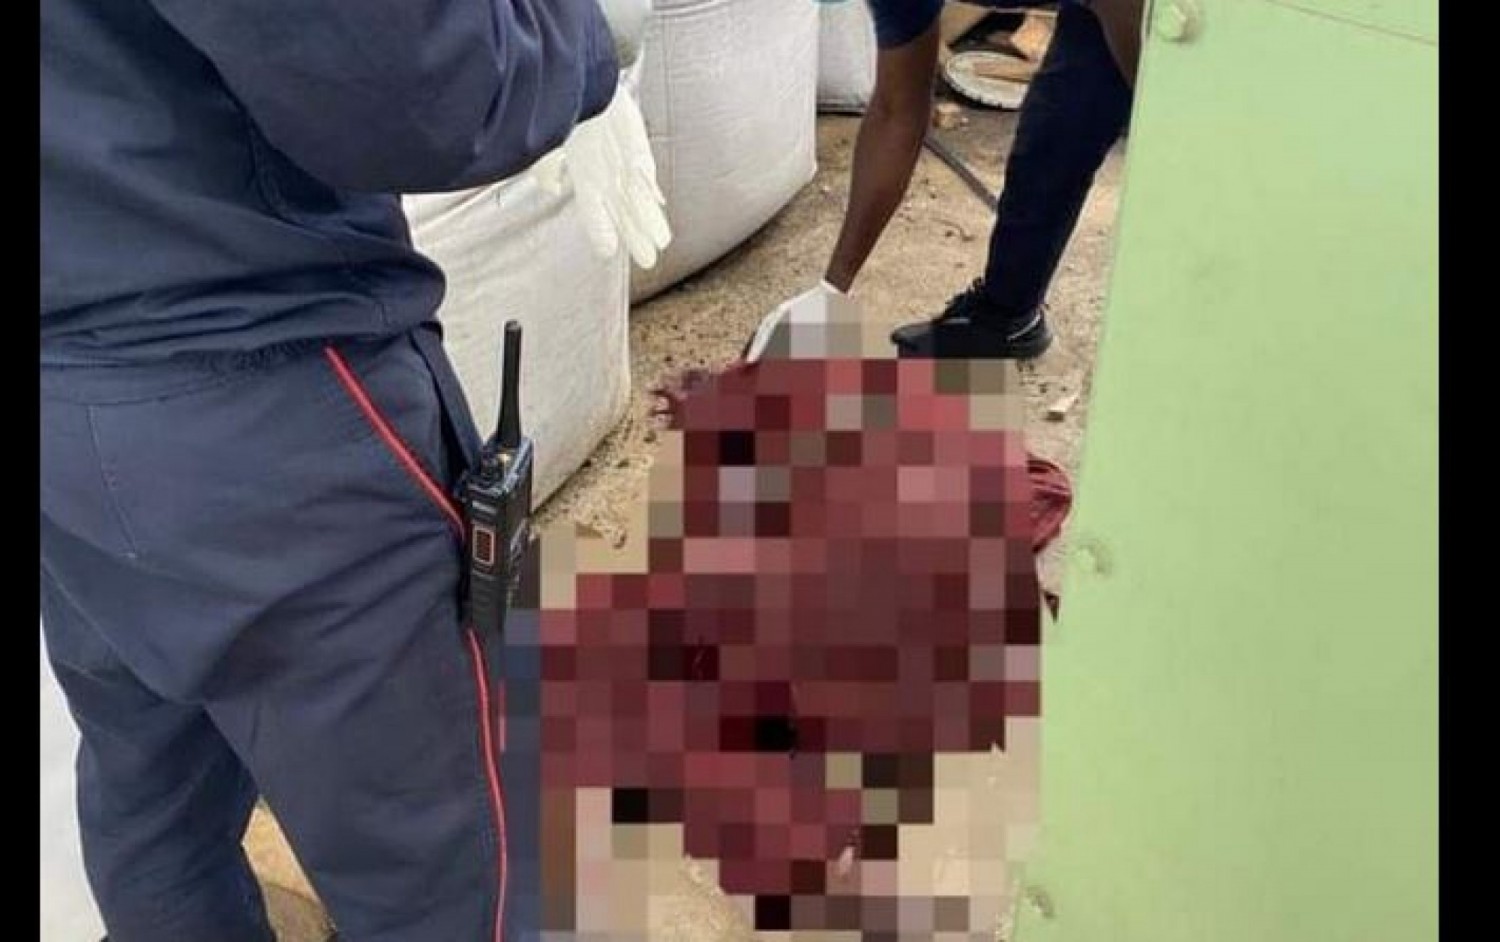 Côte d'Ivoire : Marcory, au cours d'une bagarre, il poignarde mortellement son protagoniste